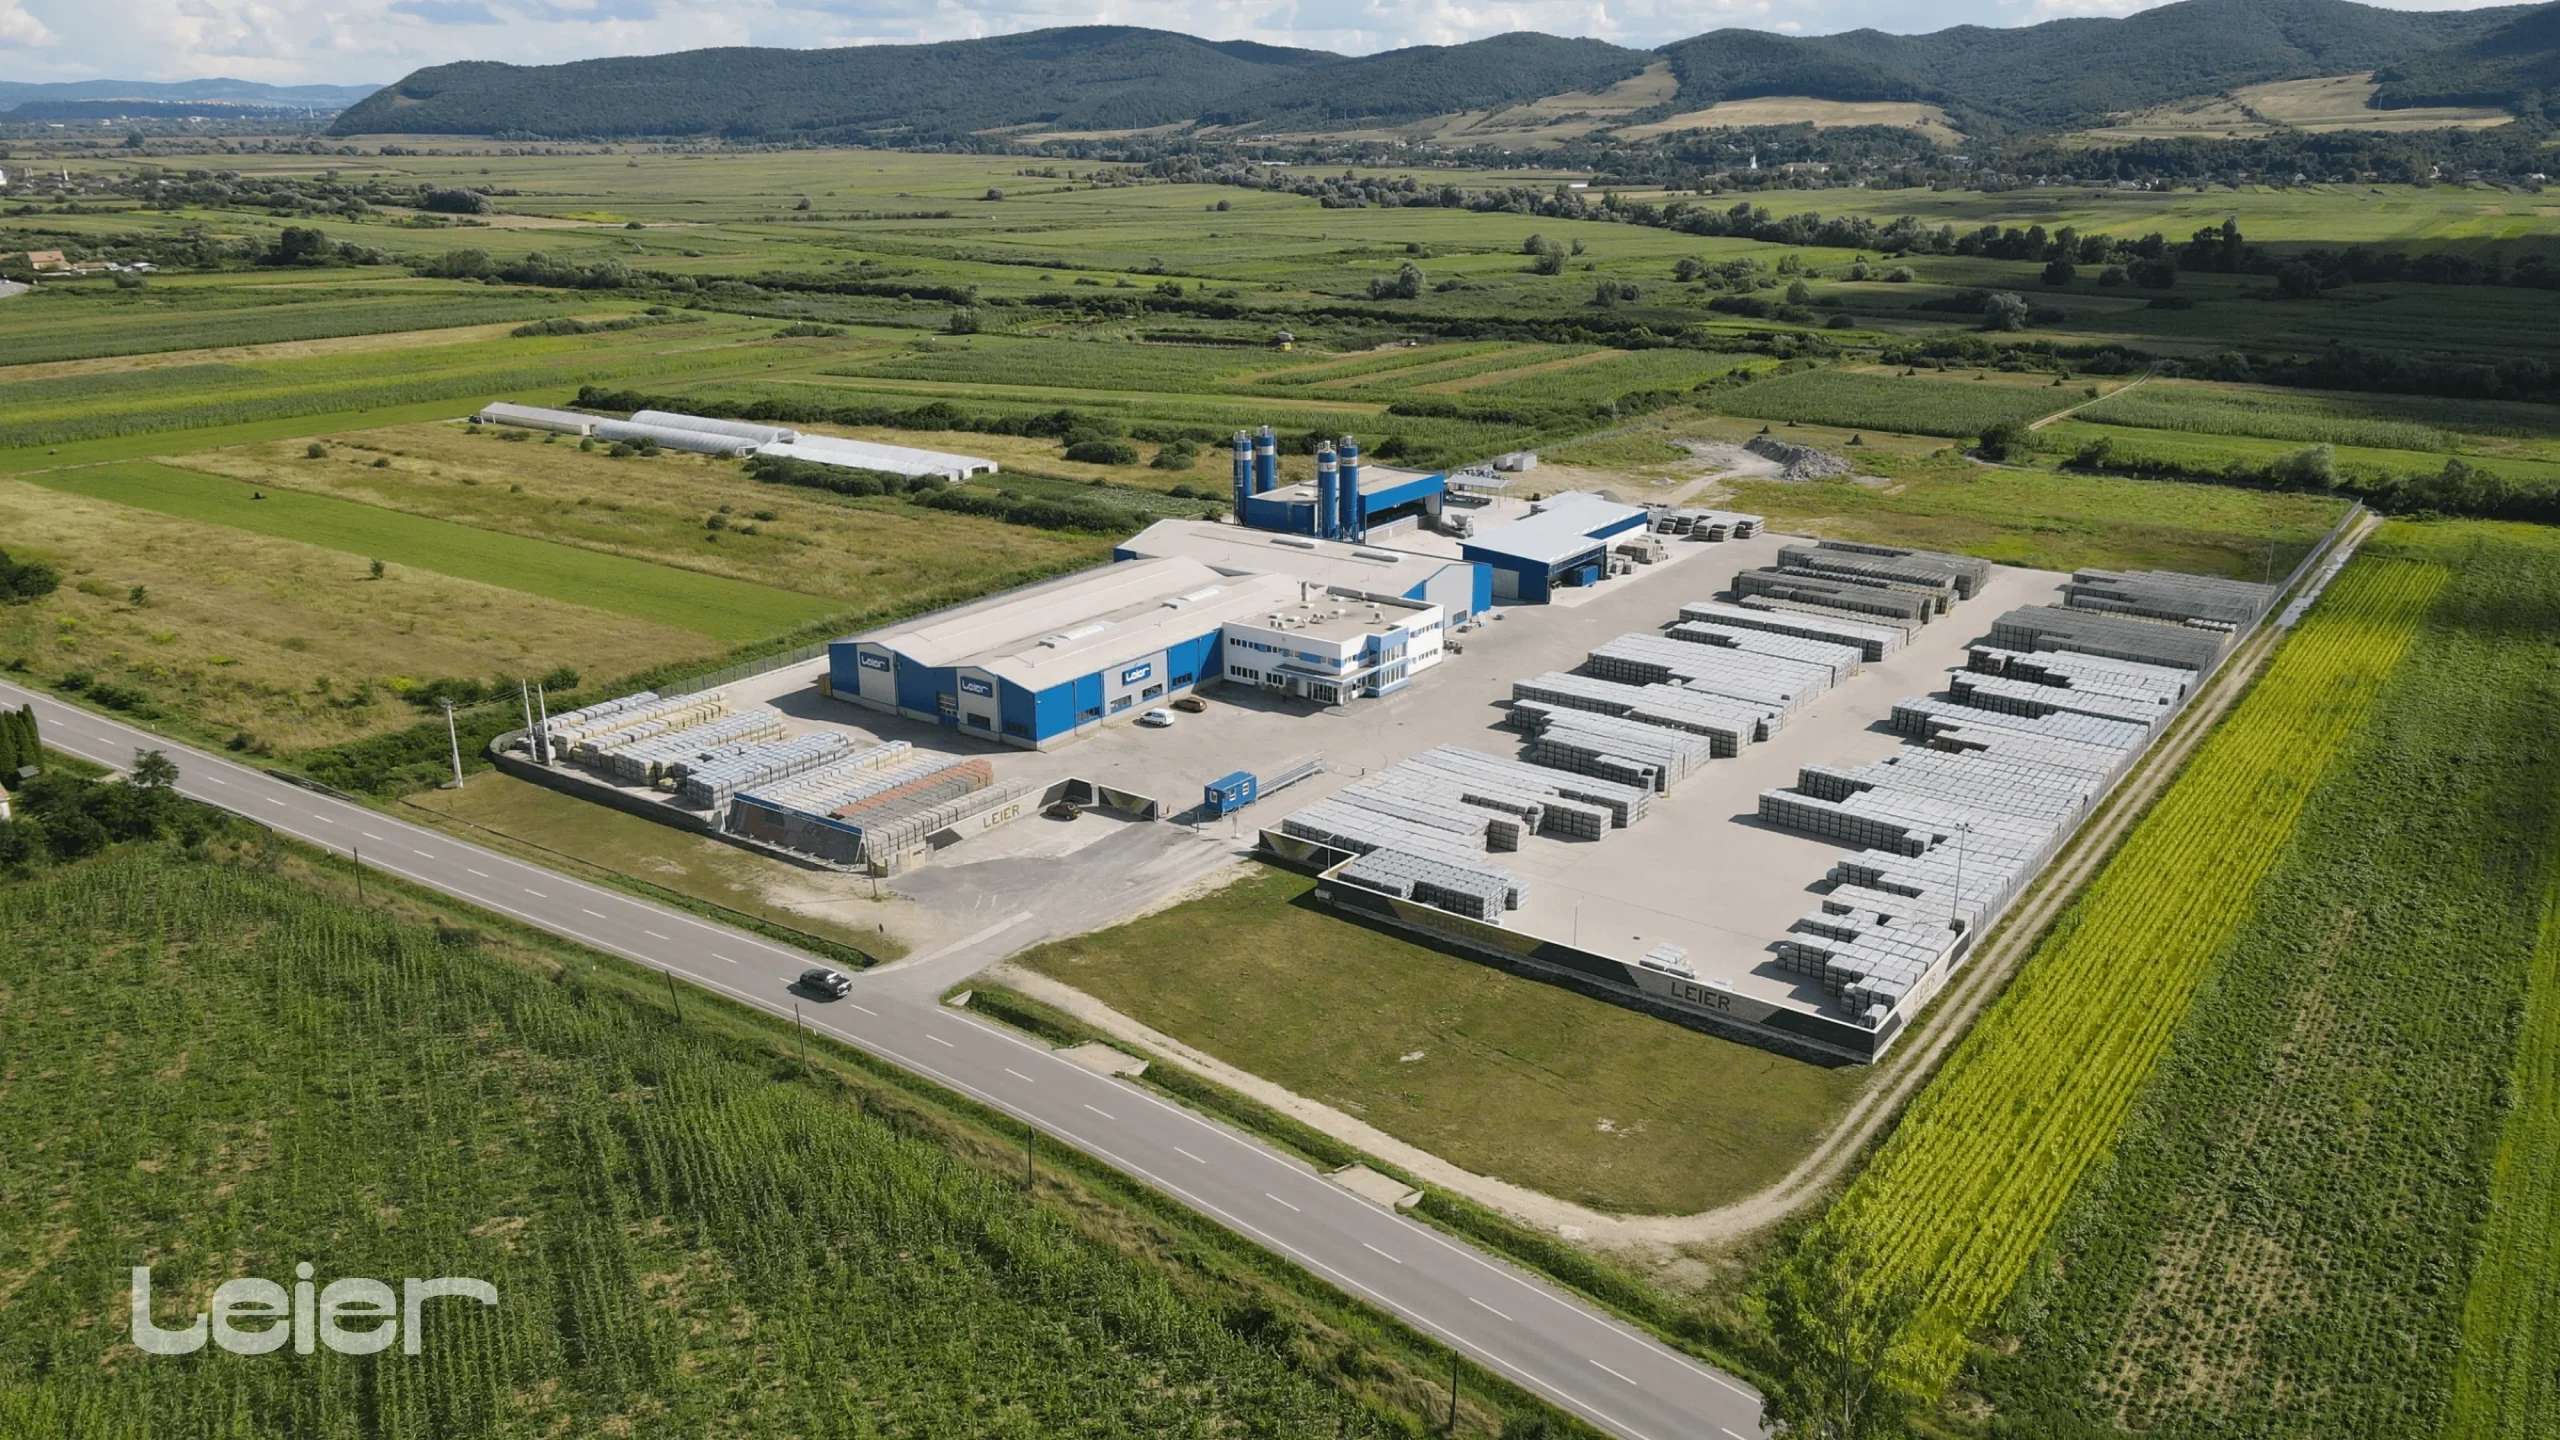 Grupul austriac Leier deschide o fabrică de betoane în Câțcău, județul Cluj